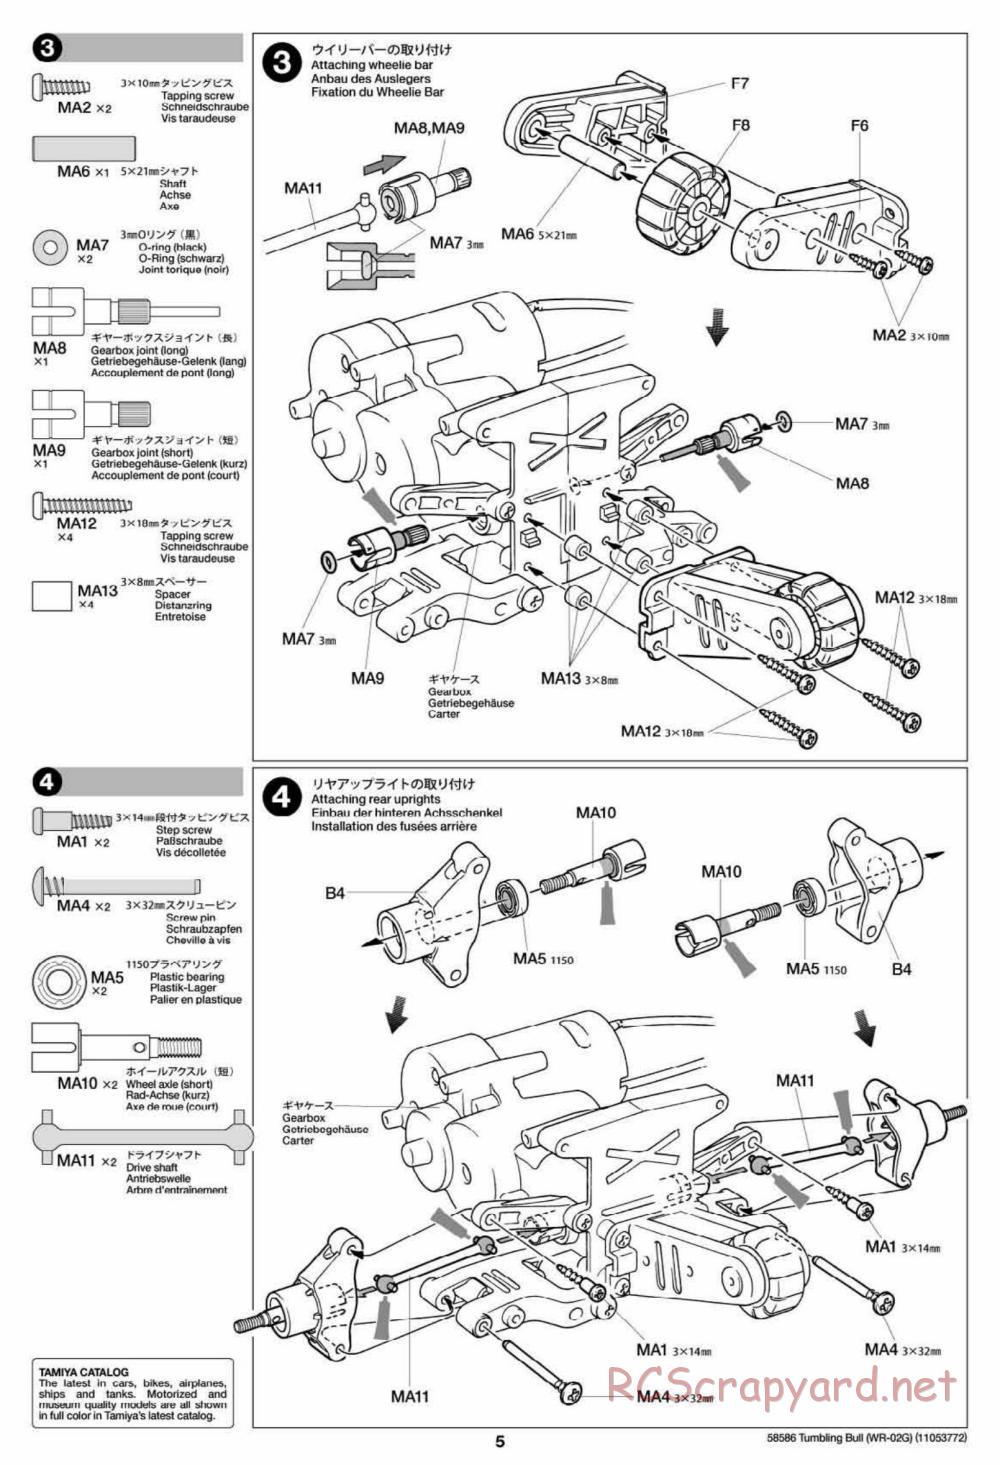 Tamiya - Tumbling Bull Chassis - Manual - Page 5